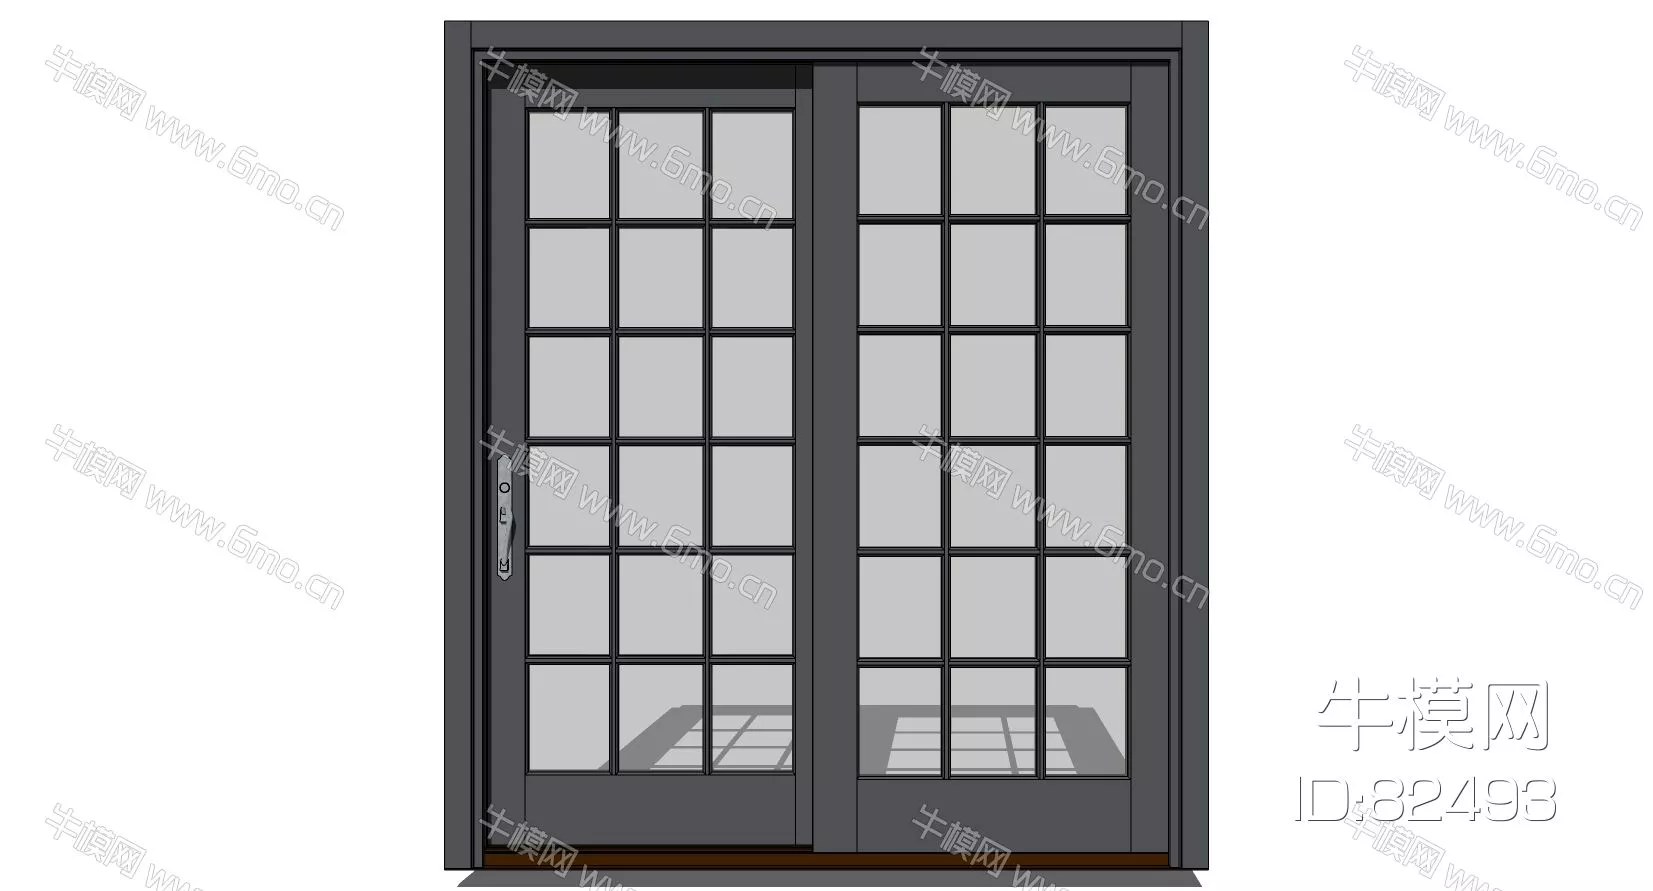 MINIMALIST DOOR AND WINDOWS - SKETCHUP 3D MODEL - ENSCAPE - 82493